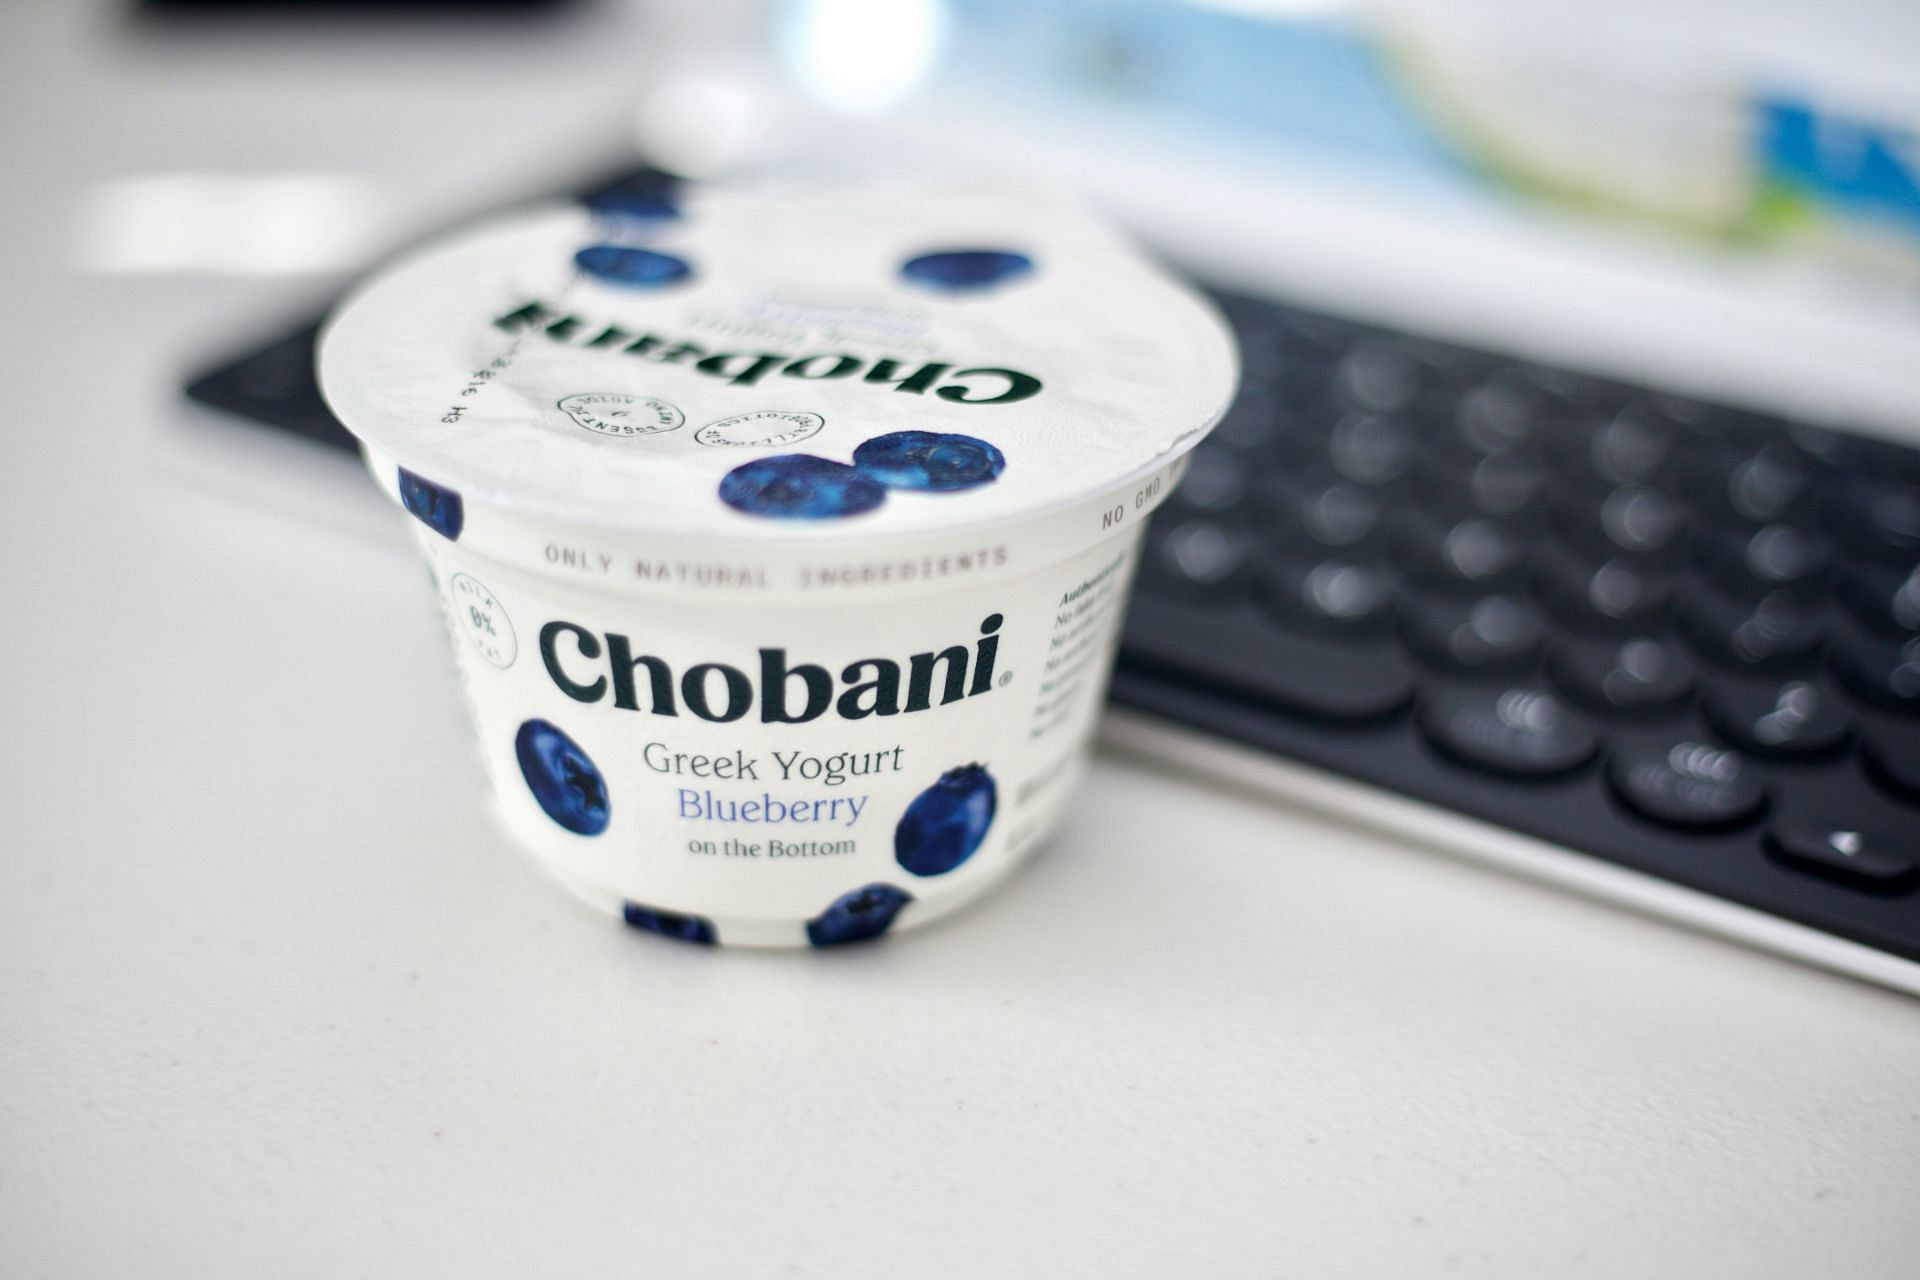 What is Greek yoghurt and is Greek yoghurt good for diabetes? (Image by Jainath Ponnala/Unsplash)